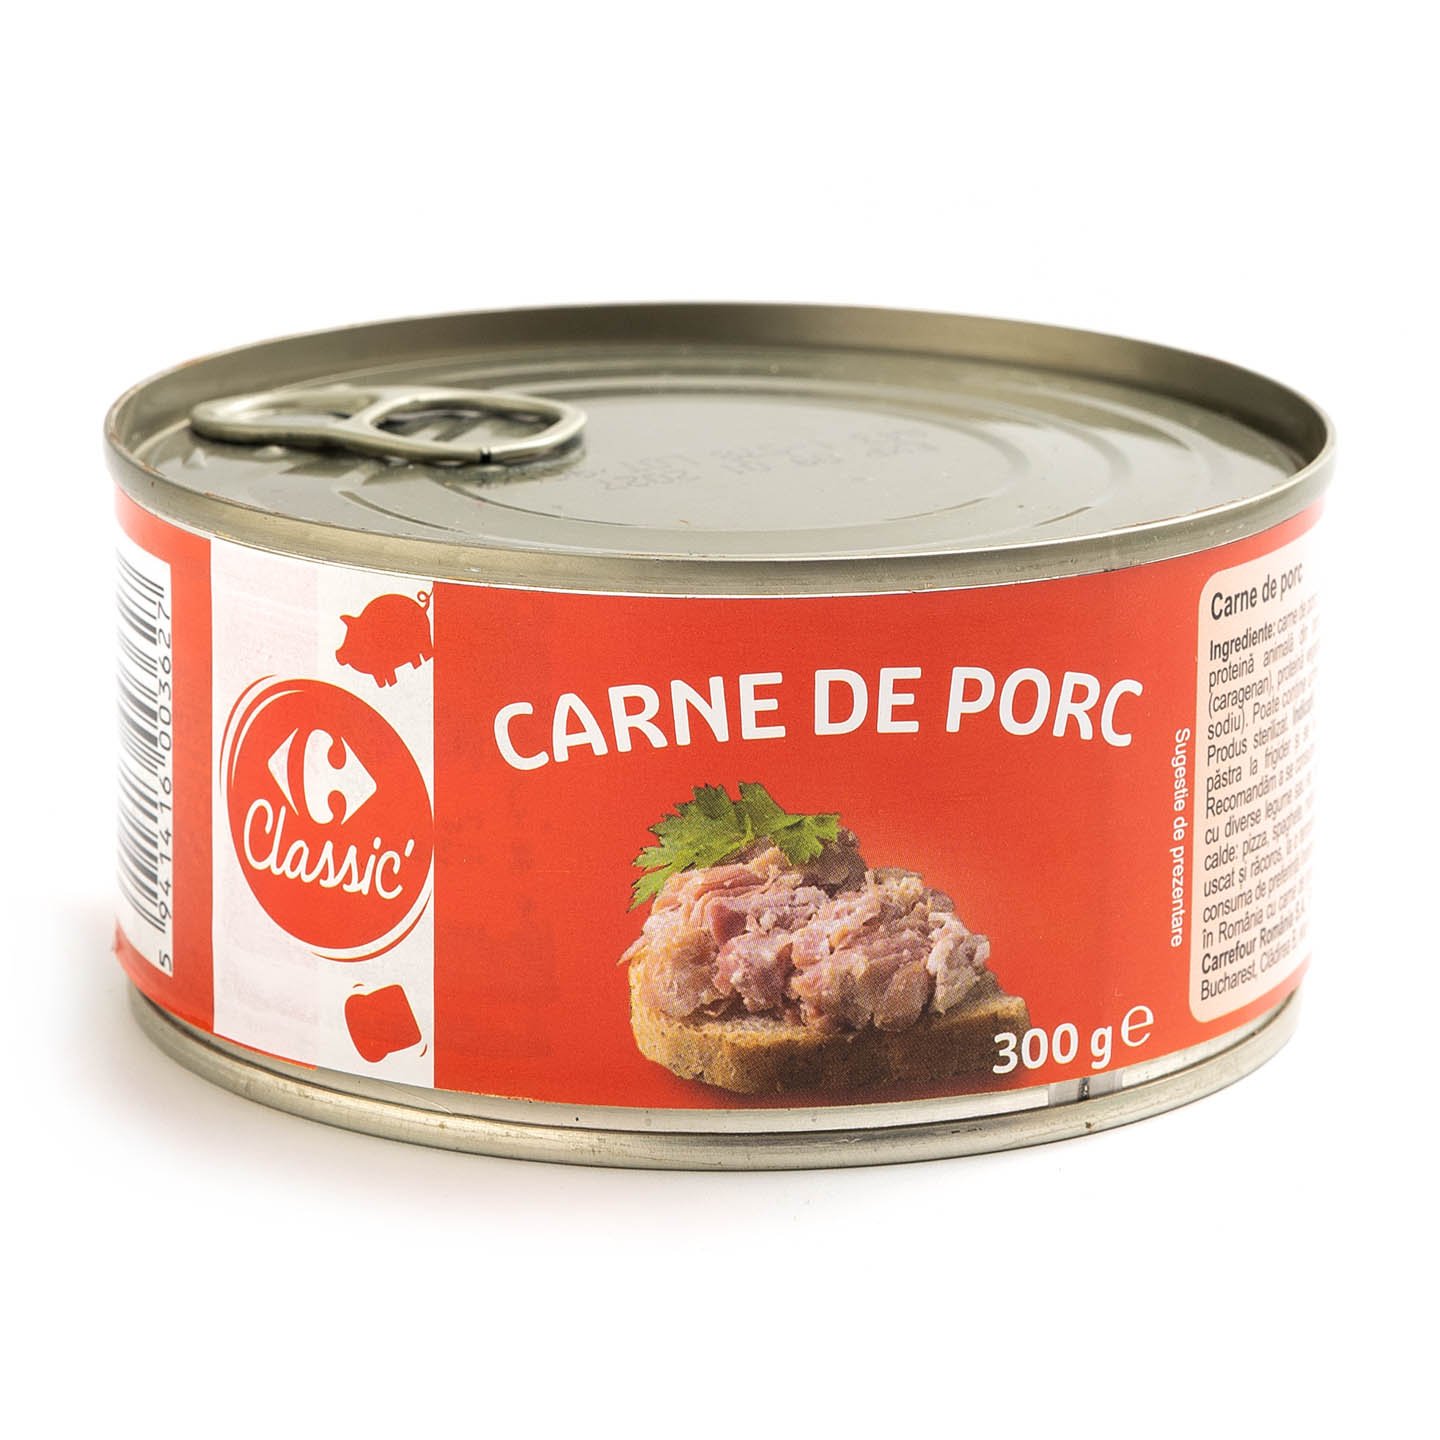 Carne de porc, Carrefour Classic 300g